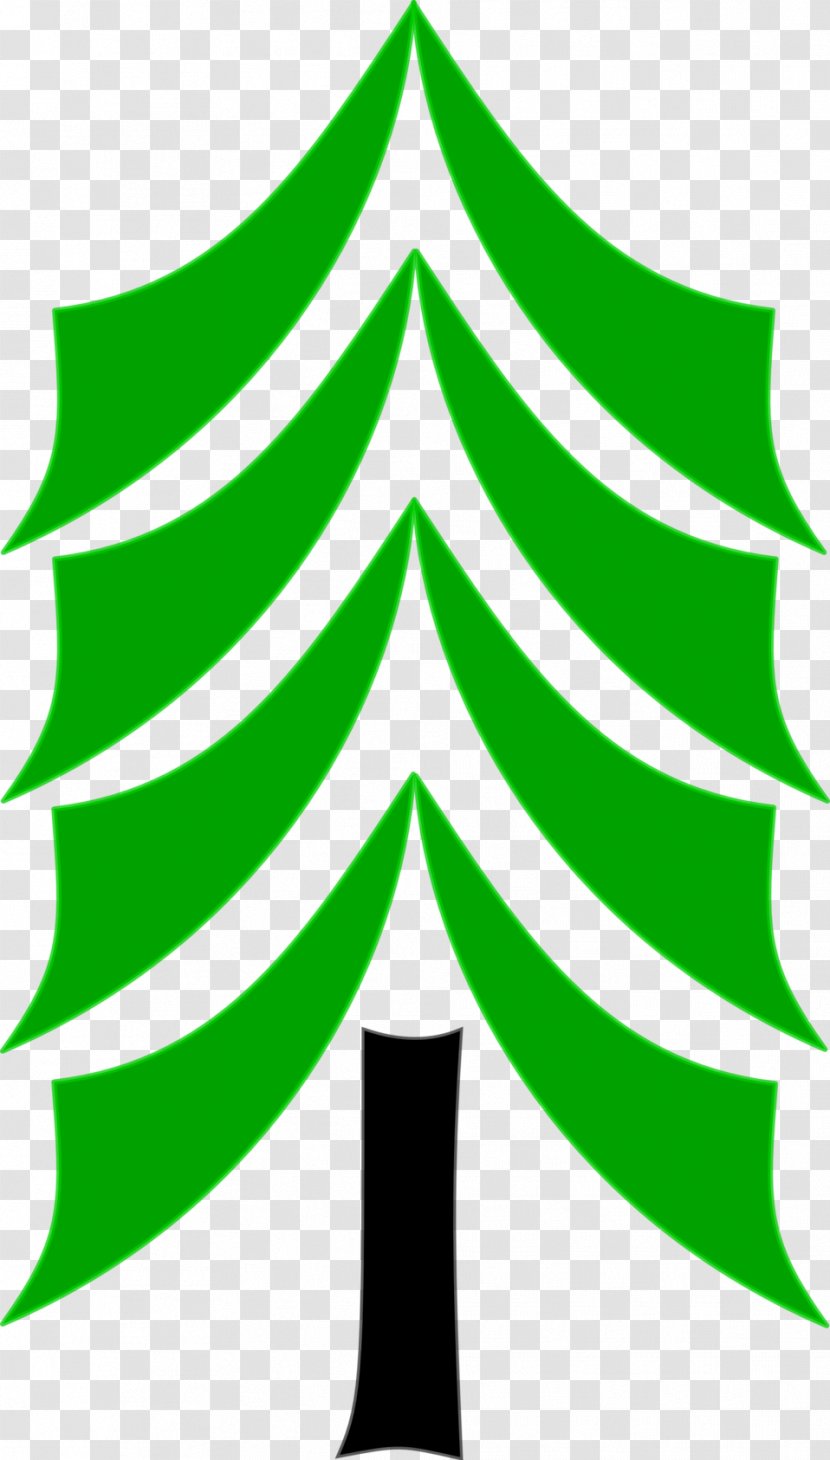 Pine Tree Clip Art - Plant Stem - Coconut Transparent PNG